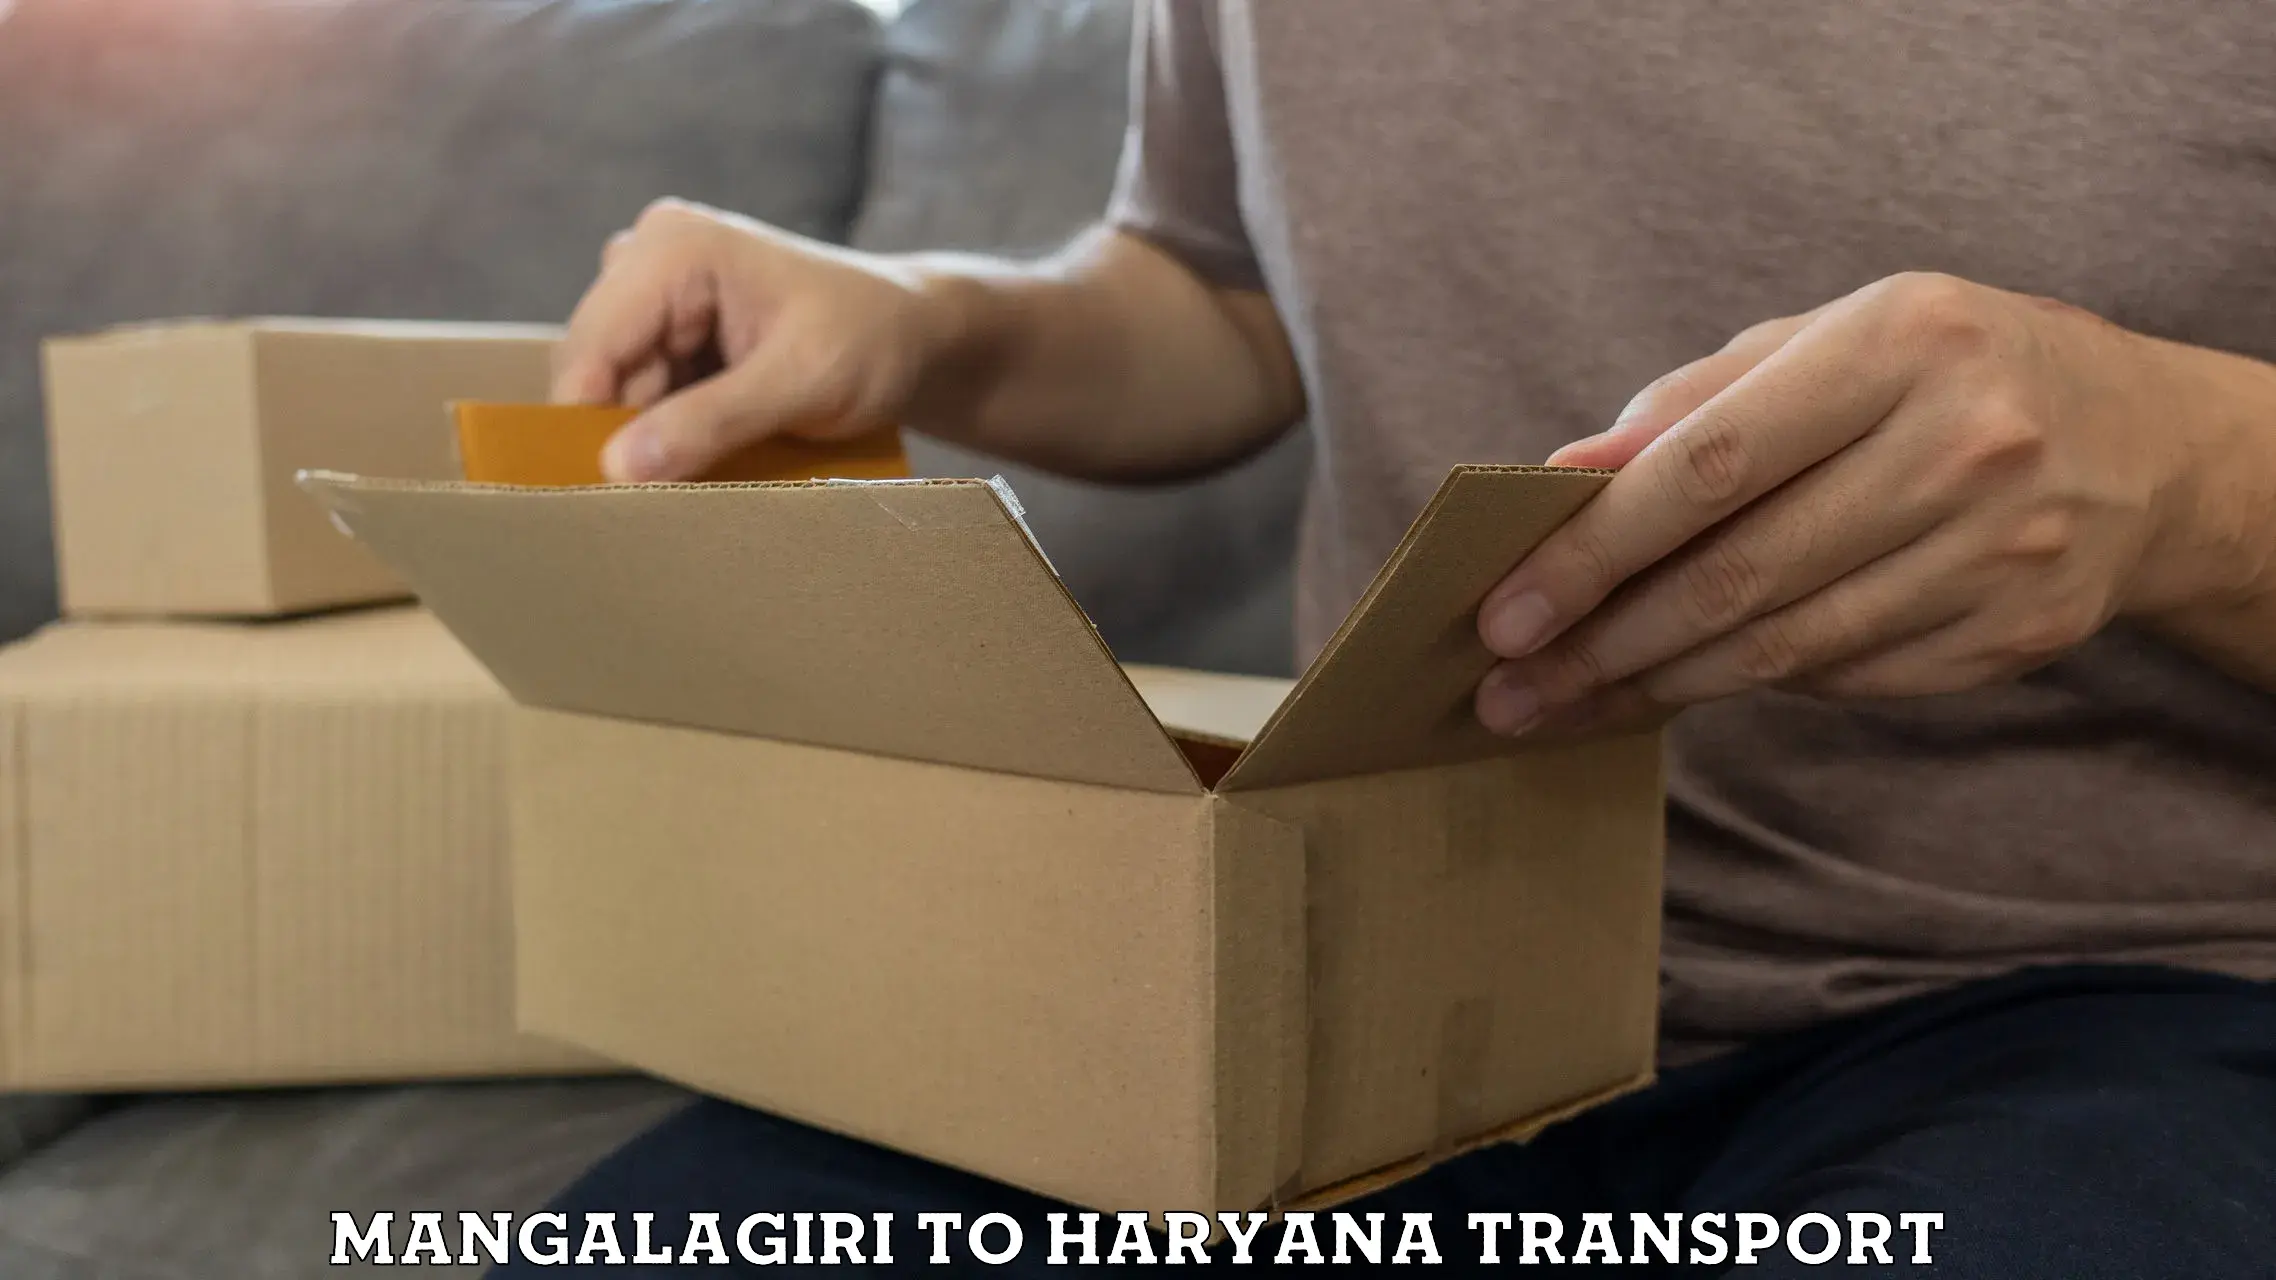 Pick up transport service Mangalagiri to NCR Haryana